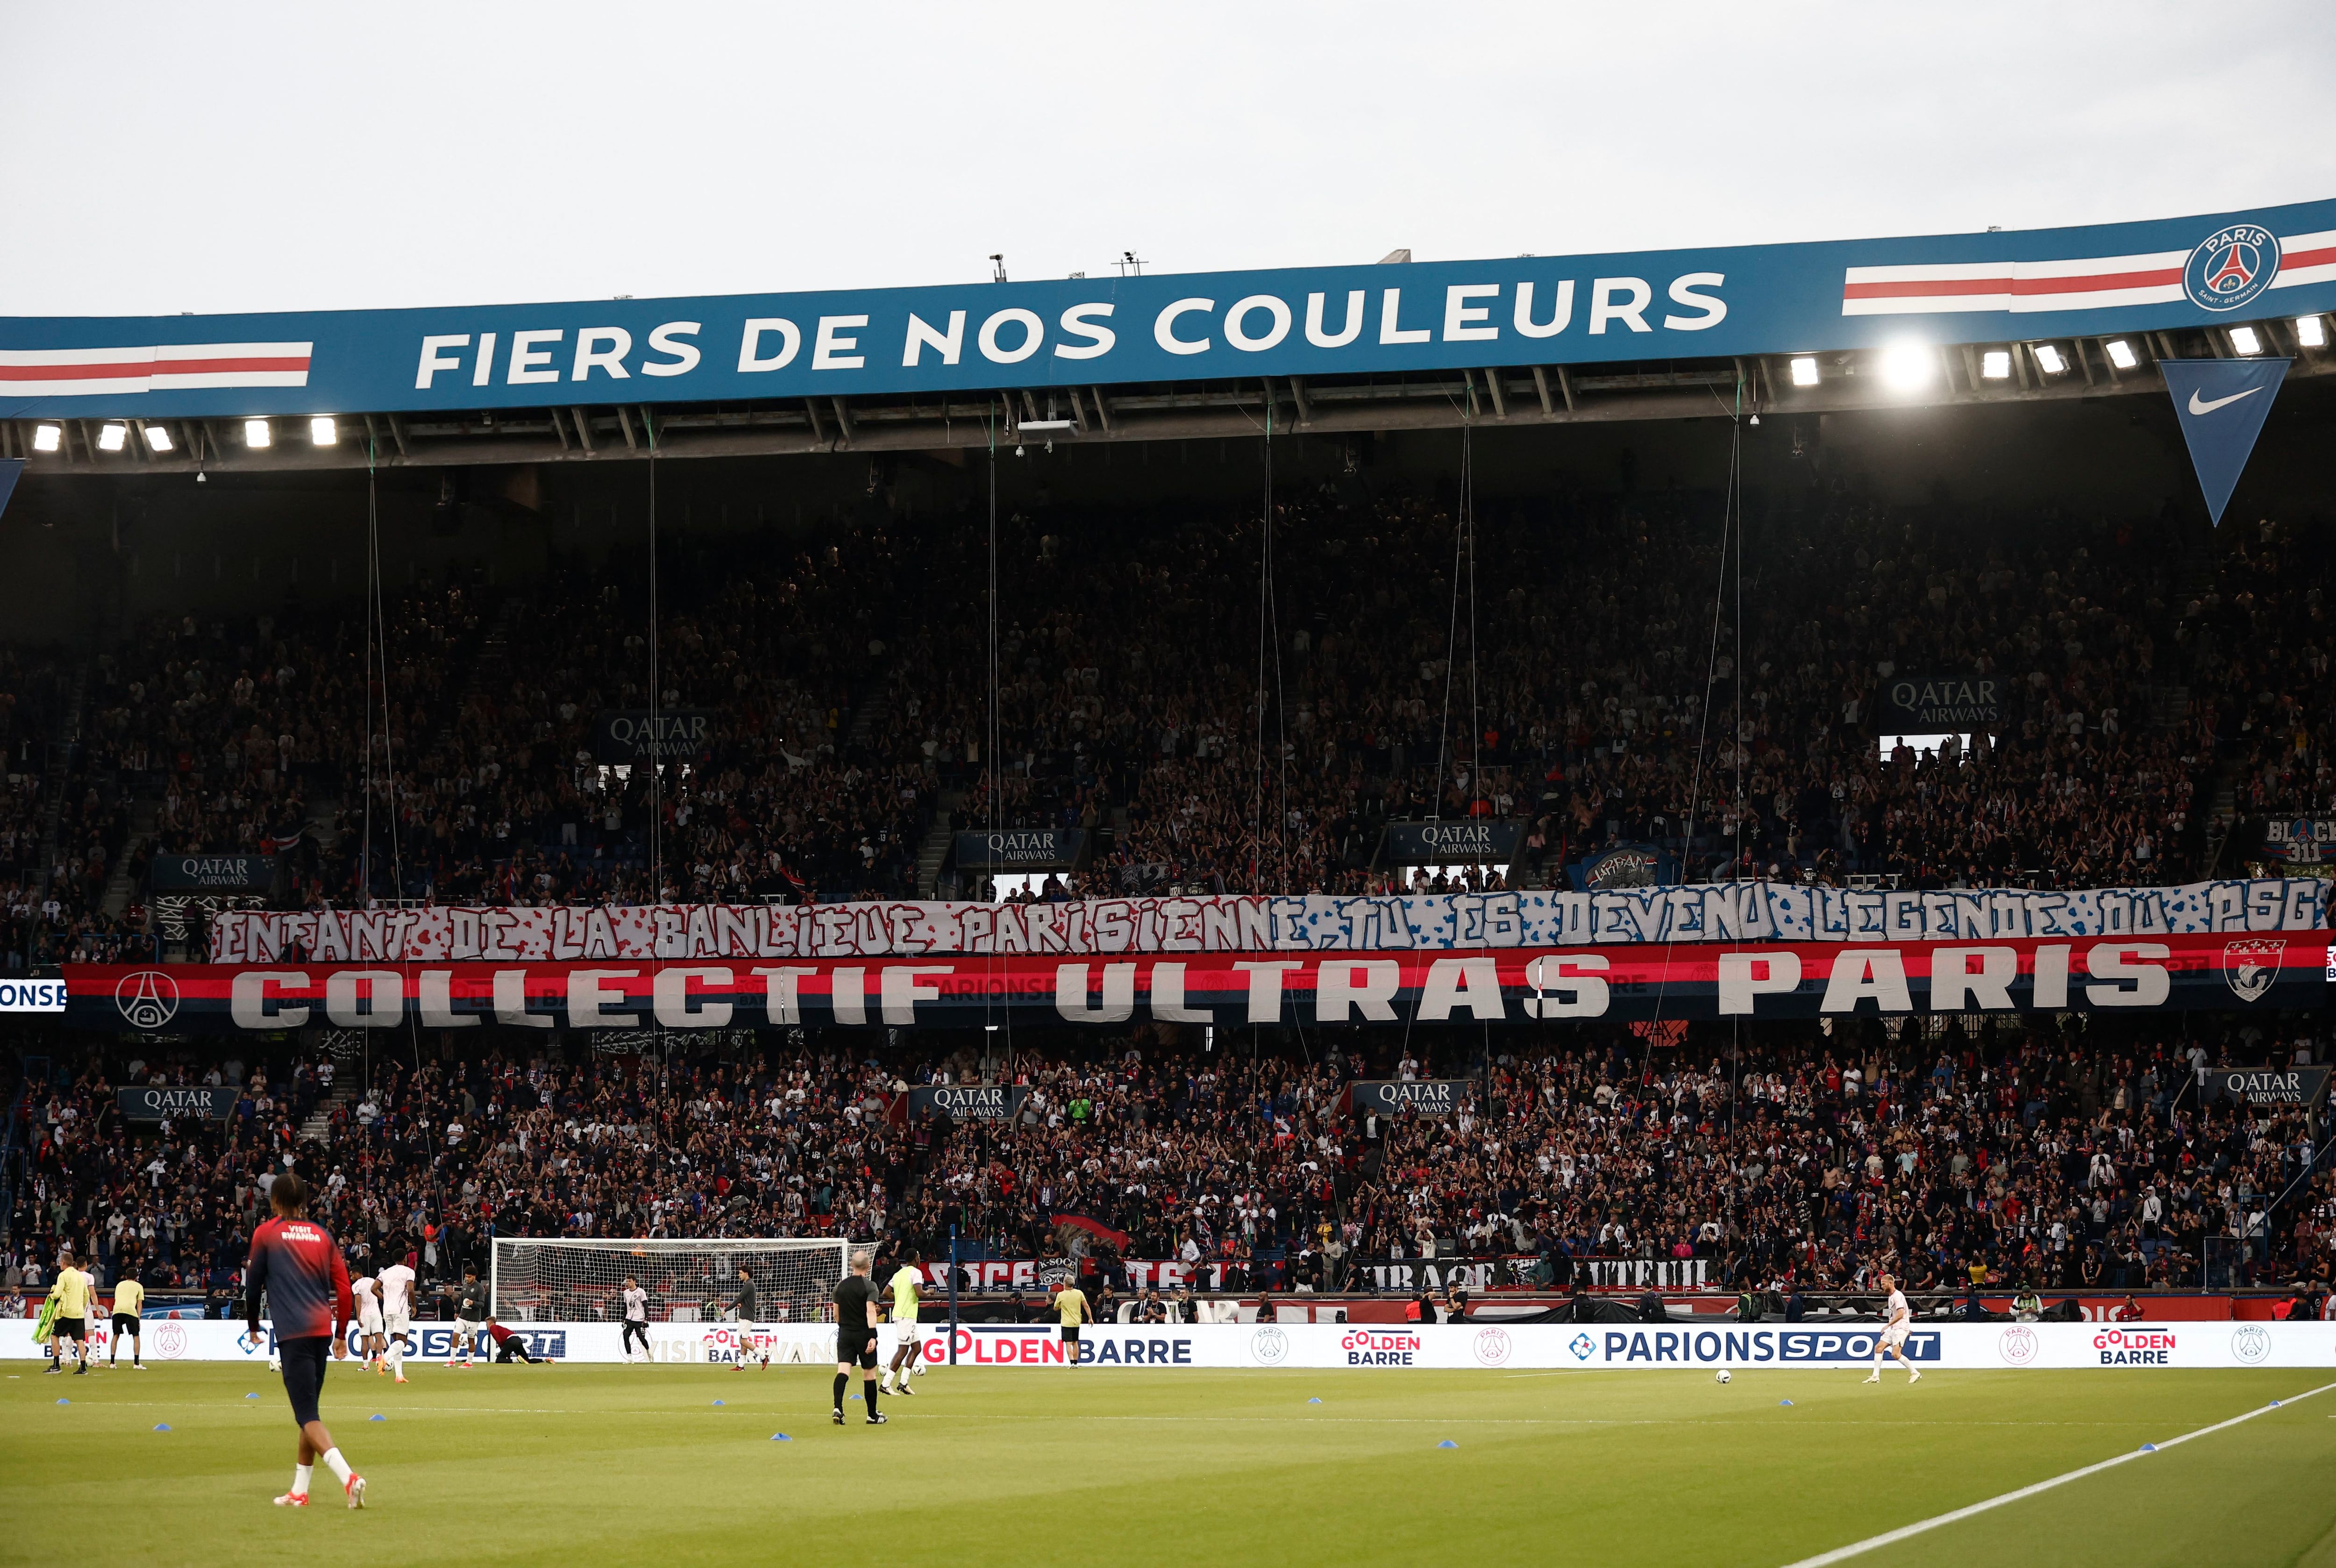 "Un niño de los suburbios de París, que se convirtió en una leyenda del Paris Saint-Germain". Los ultras del PSG mostraron una pancarta en referencia a Kylian Mbappé antes de su último partido en casa para el club (REUTERS/Benoit Tessier)